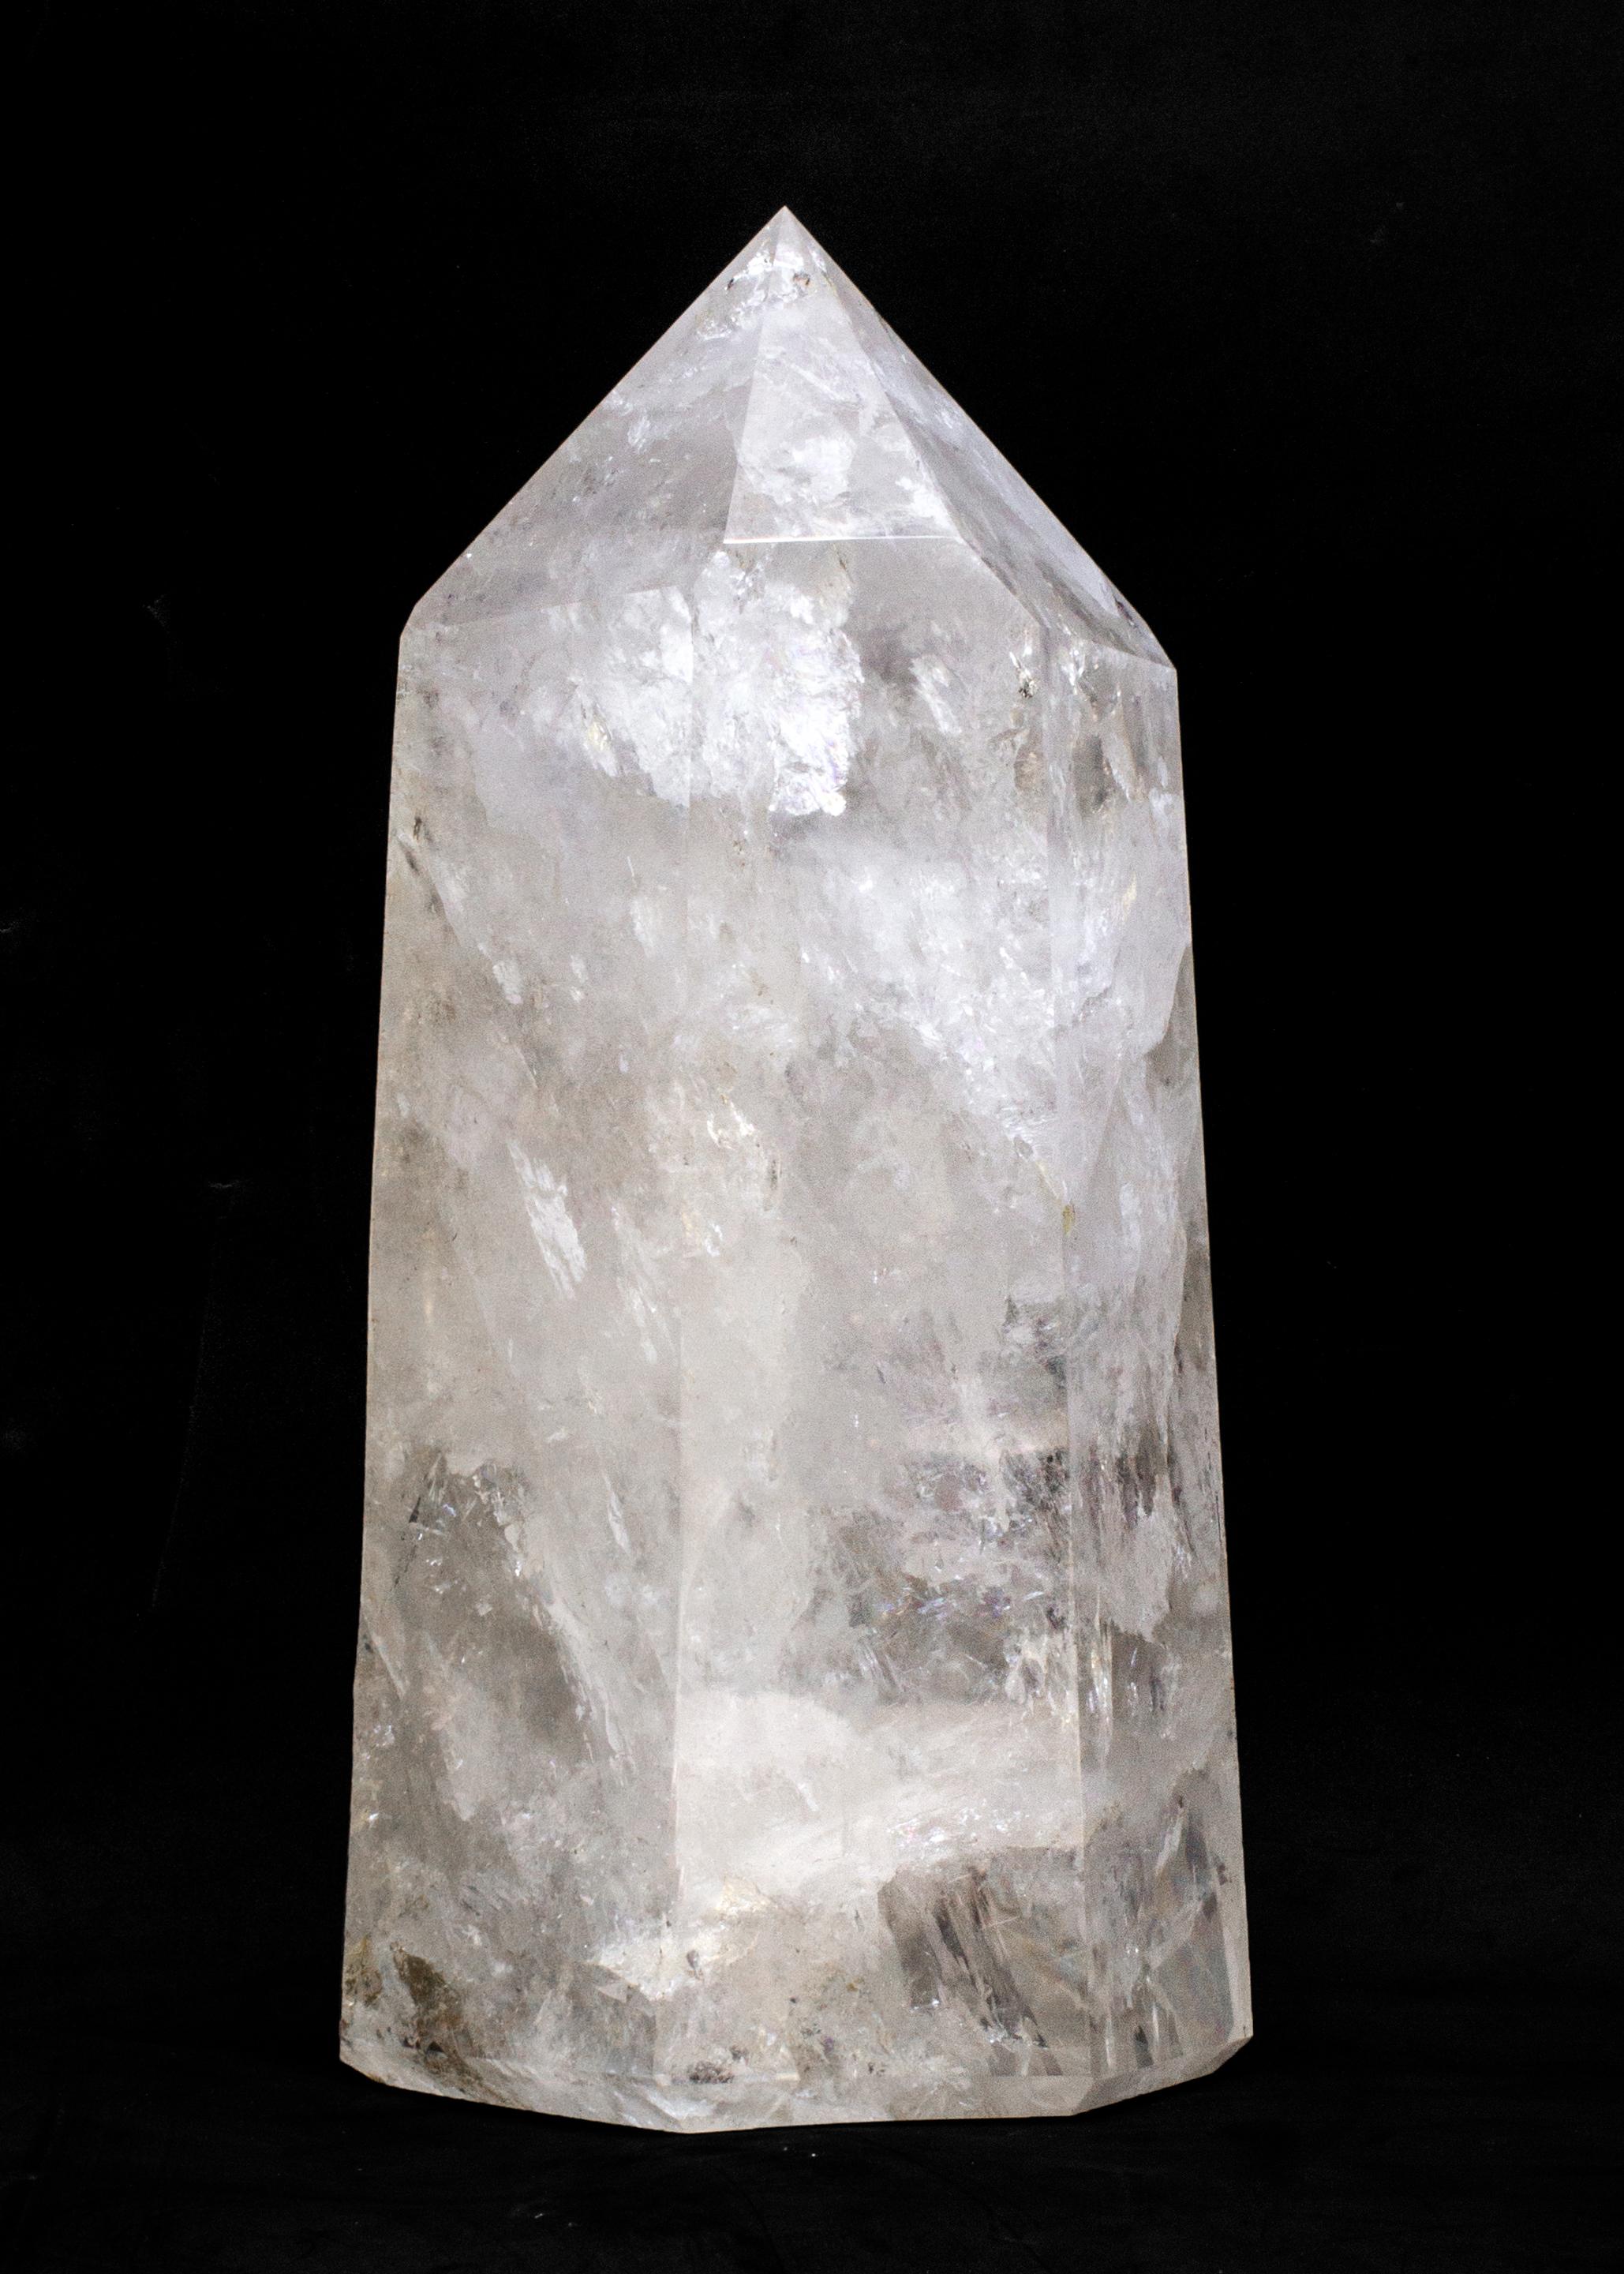 Obelisk aus poliertem Kristallquarz.

Die polierte Quarzkristallspitze stammt aus Brasilien. Er wird von Hand geschliffen und facettiert, um die Form eines sechsseitigen Obelisken zu erhalten, und er enthält natürliche Verschlüsse. Es ist sehr